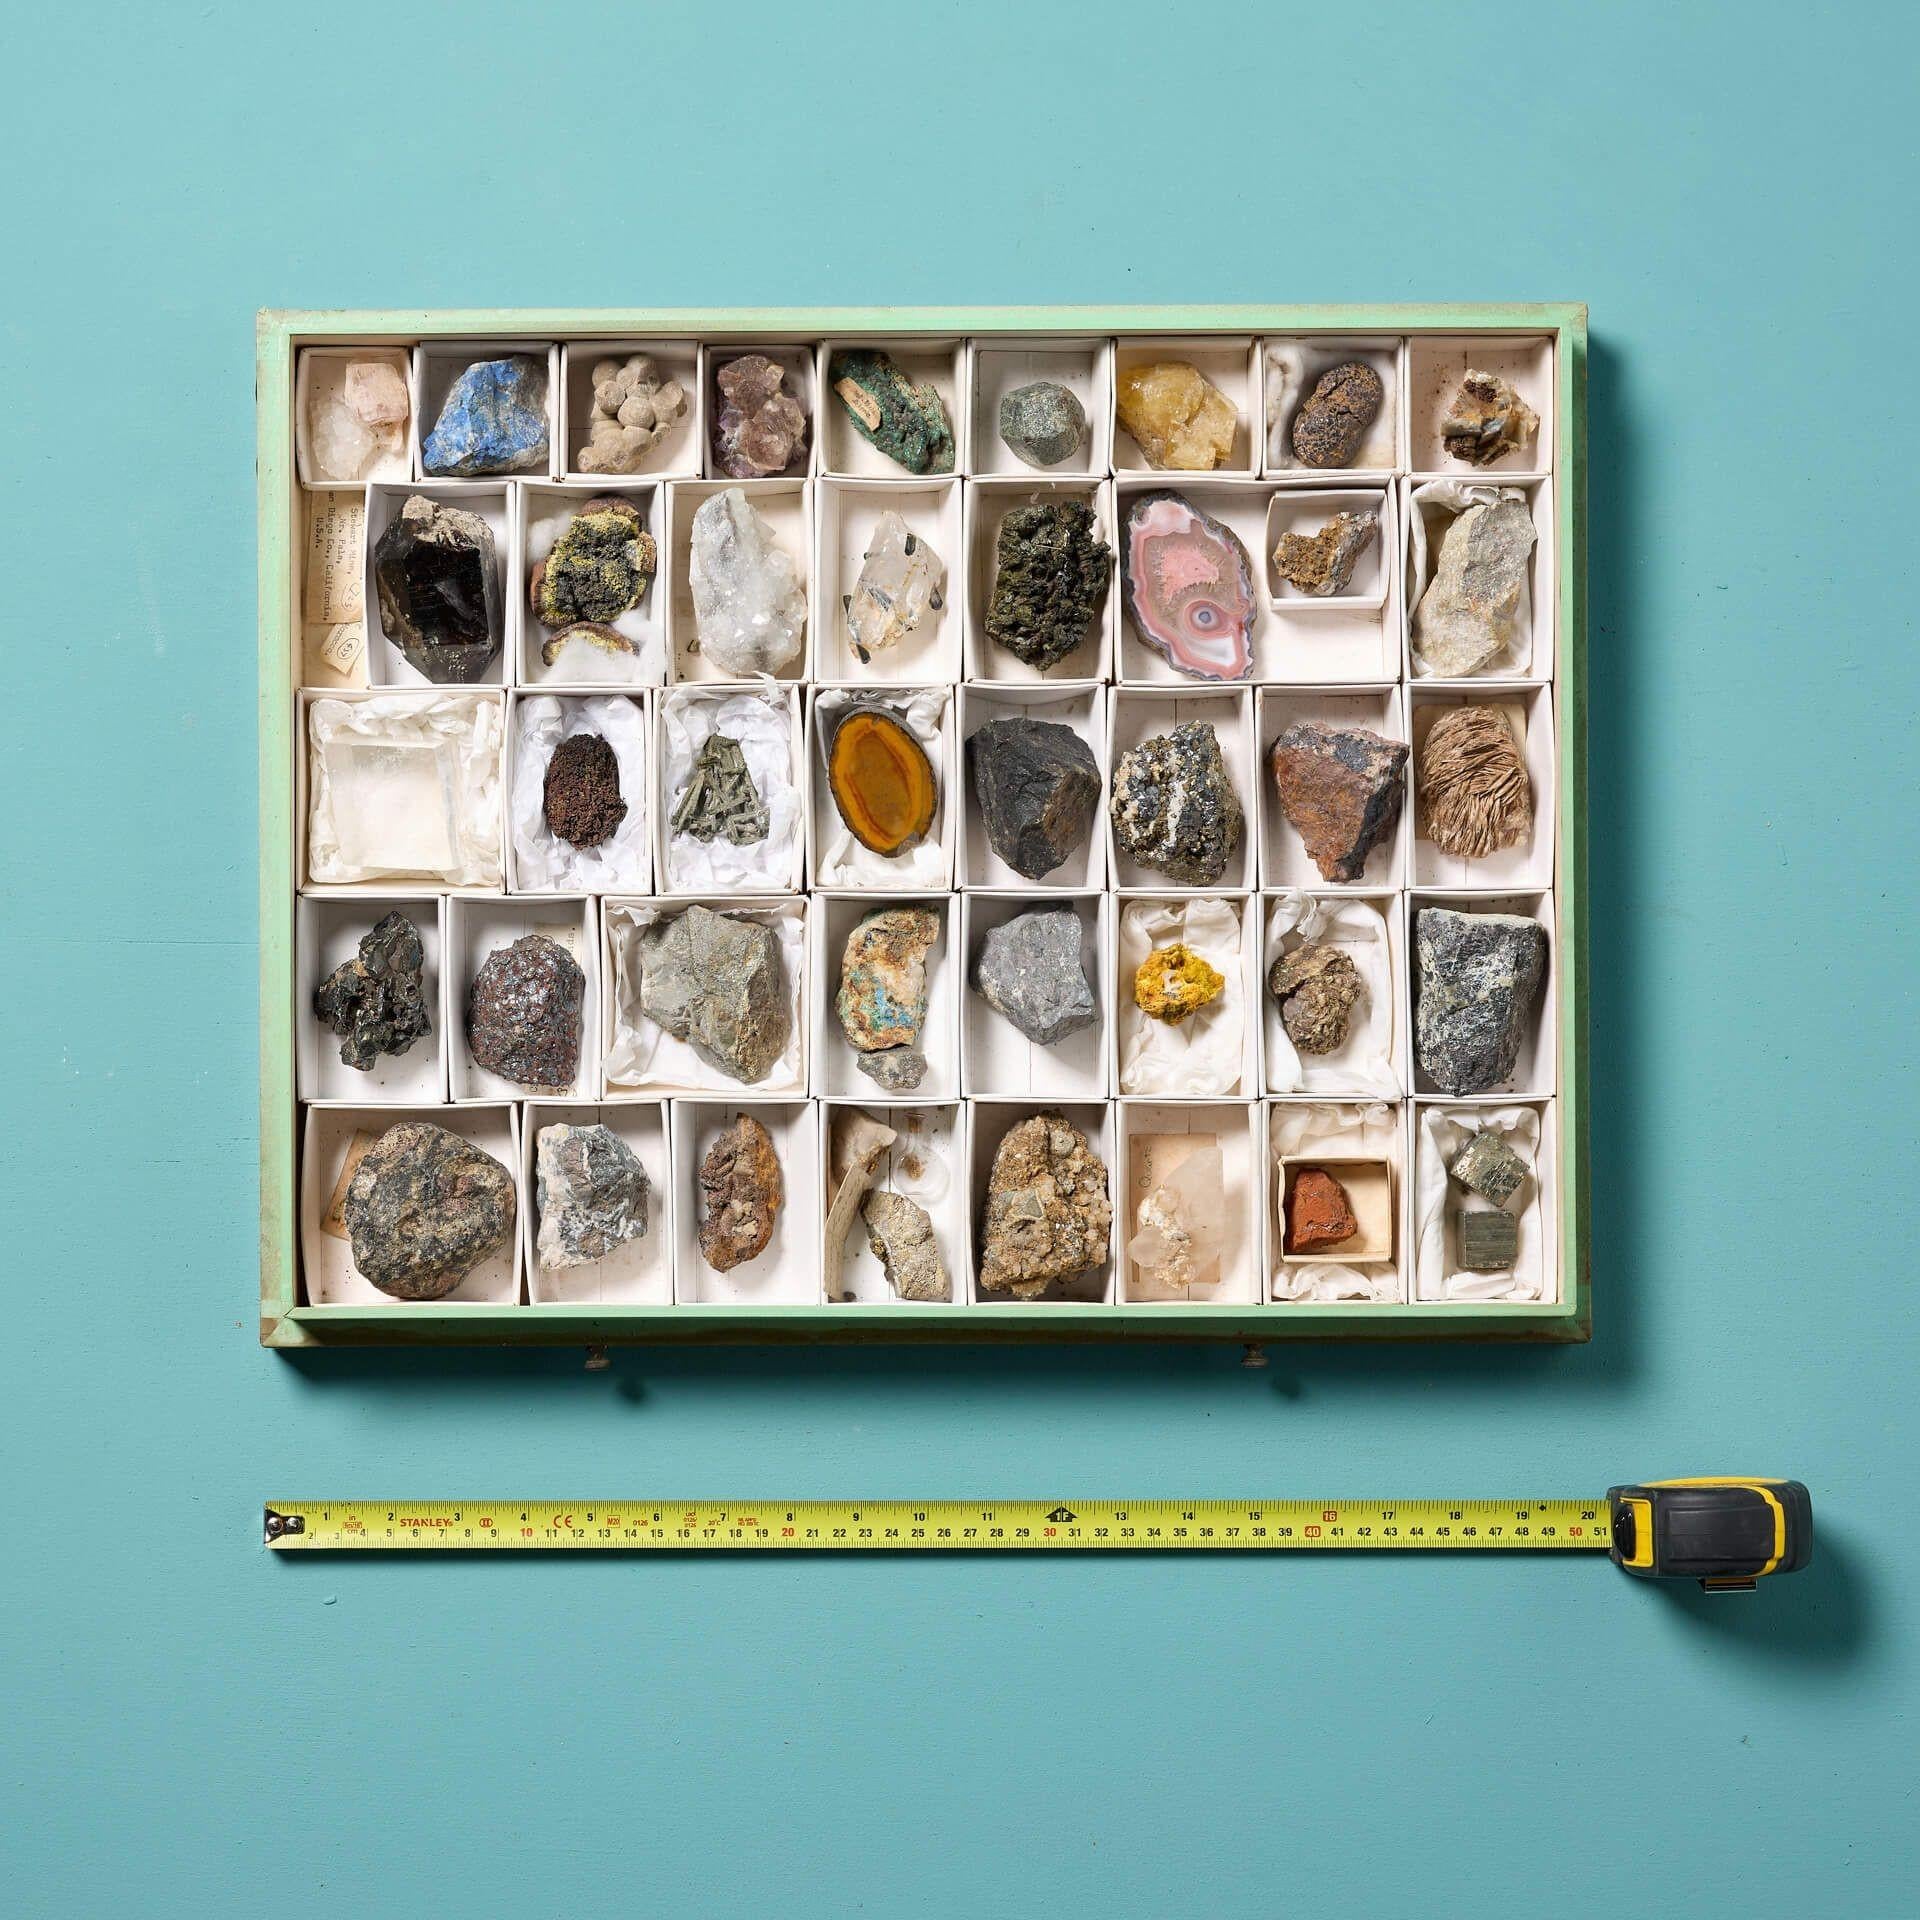 Eine Sammlung von Museumsmineralien in einer Vitrine. Das Set wird in einem eleganten, glasierten Etui präsentiert und enthält 48 europäische Mineralien, darunter eine Goldphiole, ein Gestein mit Goldspuren, Lapislazuli und Pyrit mit Kalzit, die